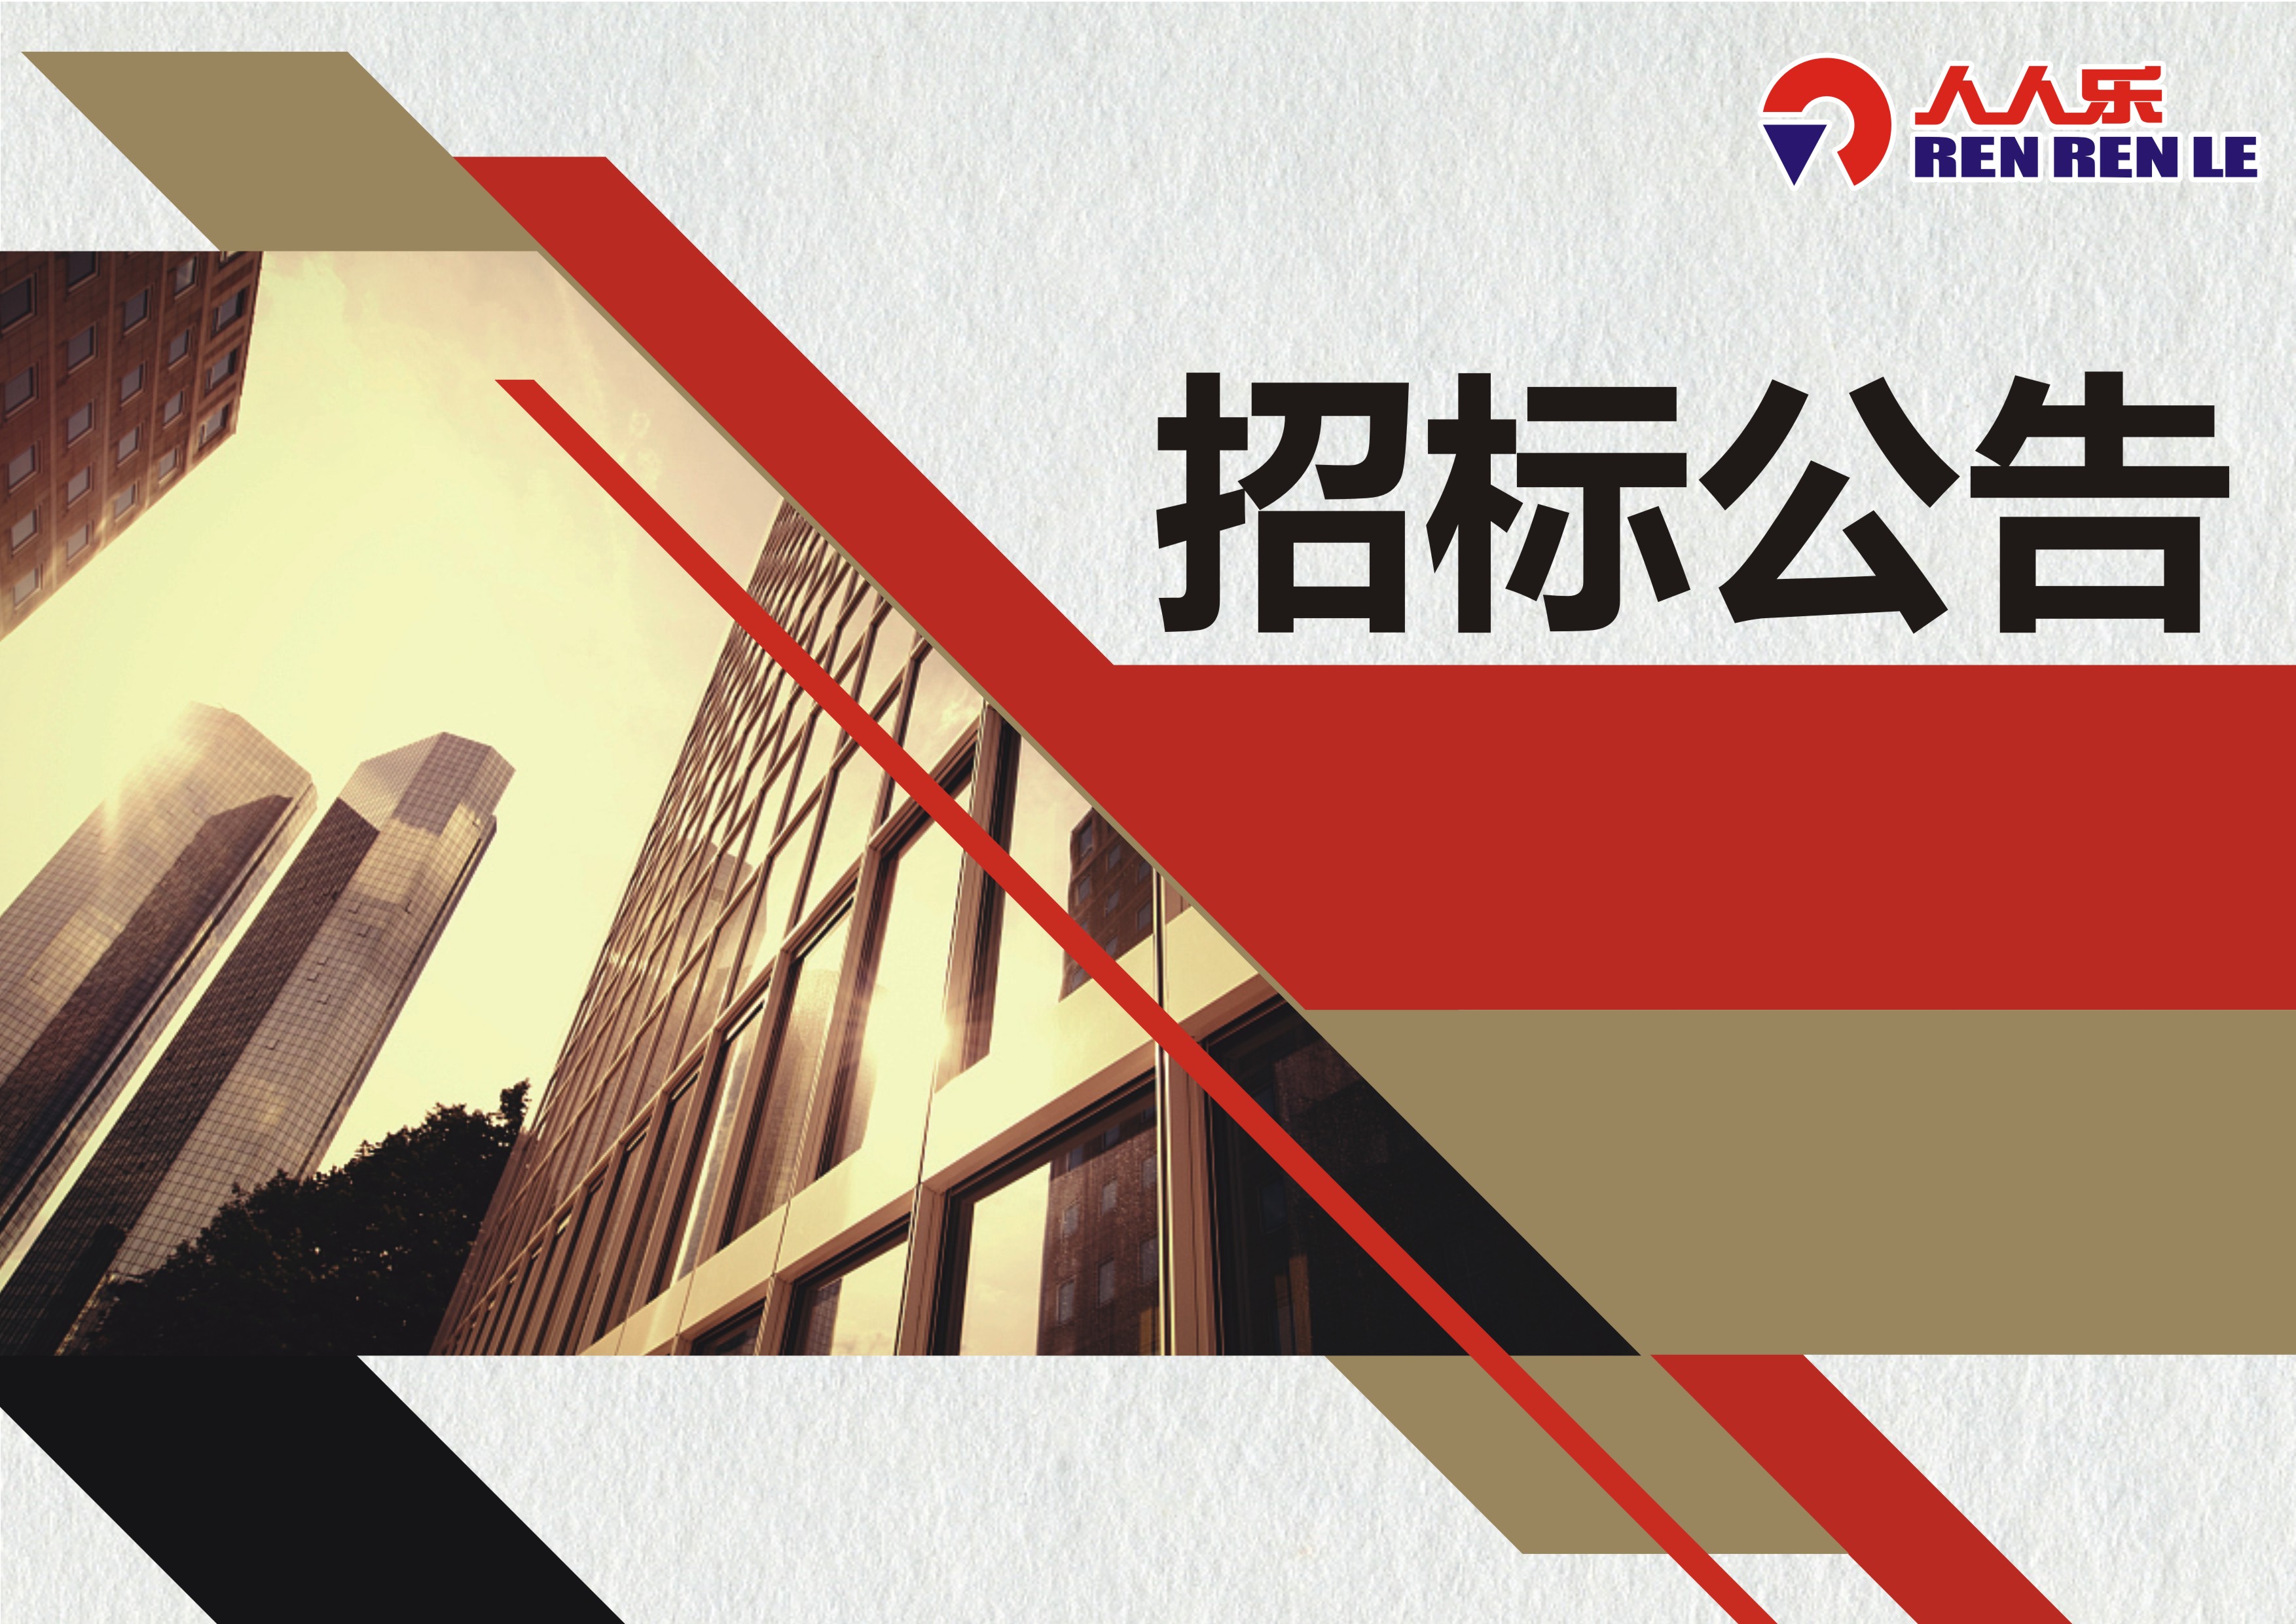 桂林市人人乐商业有限公司电梯设备维护保养项目招标书